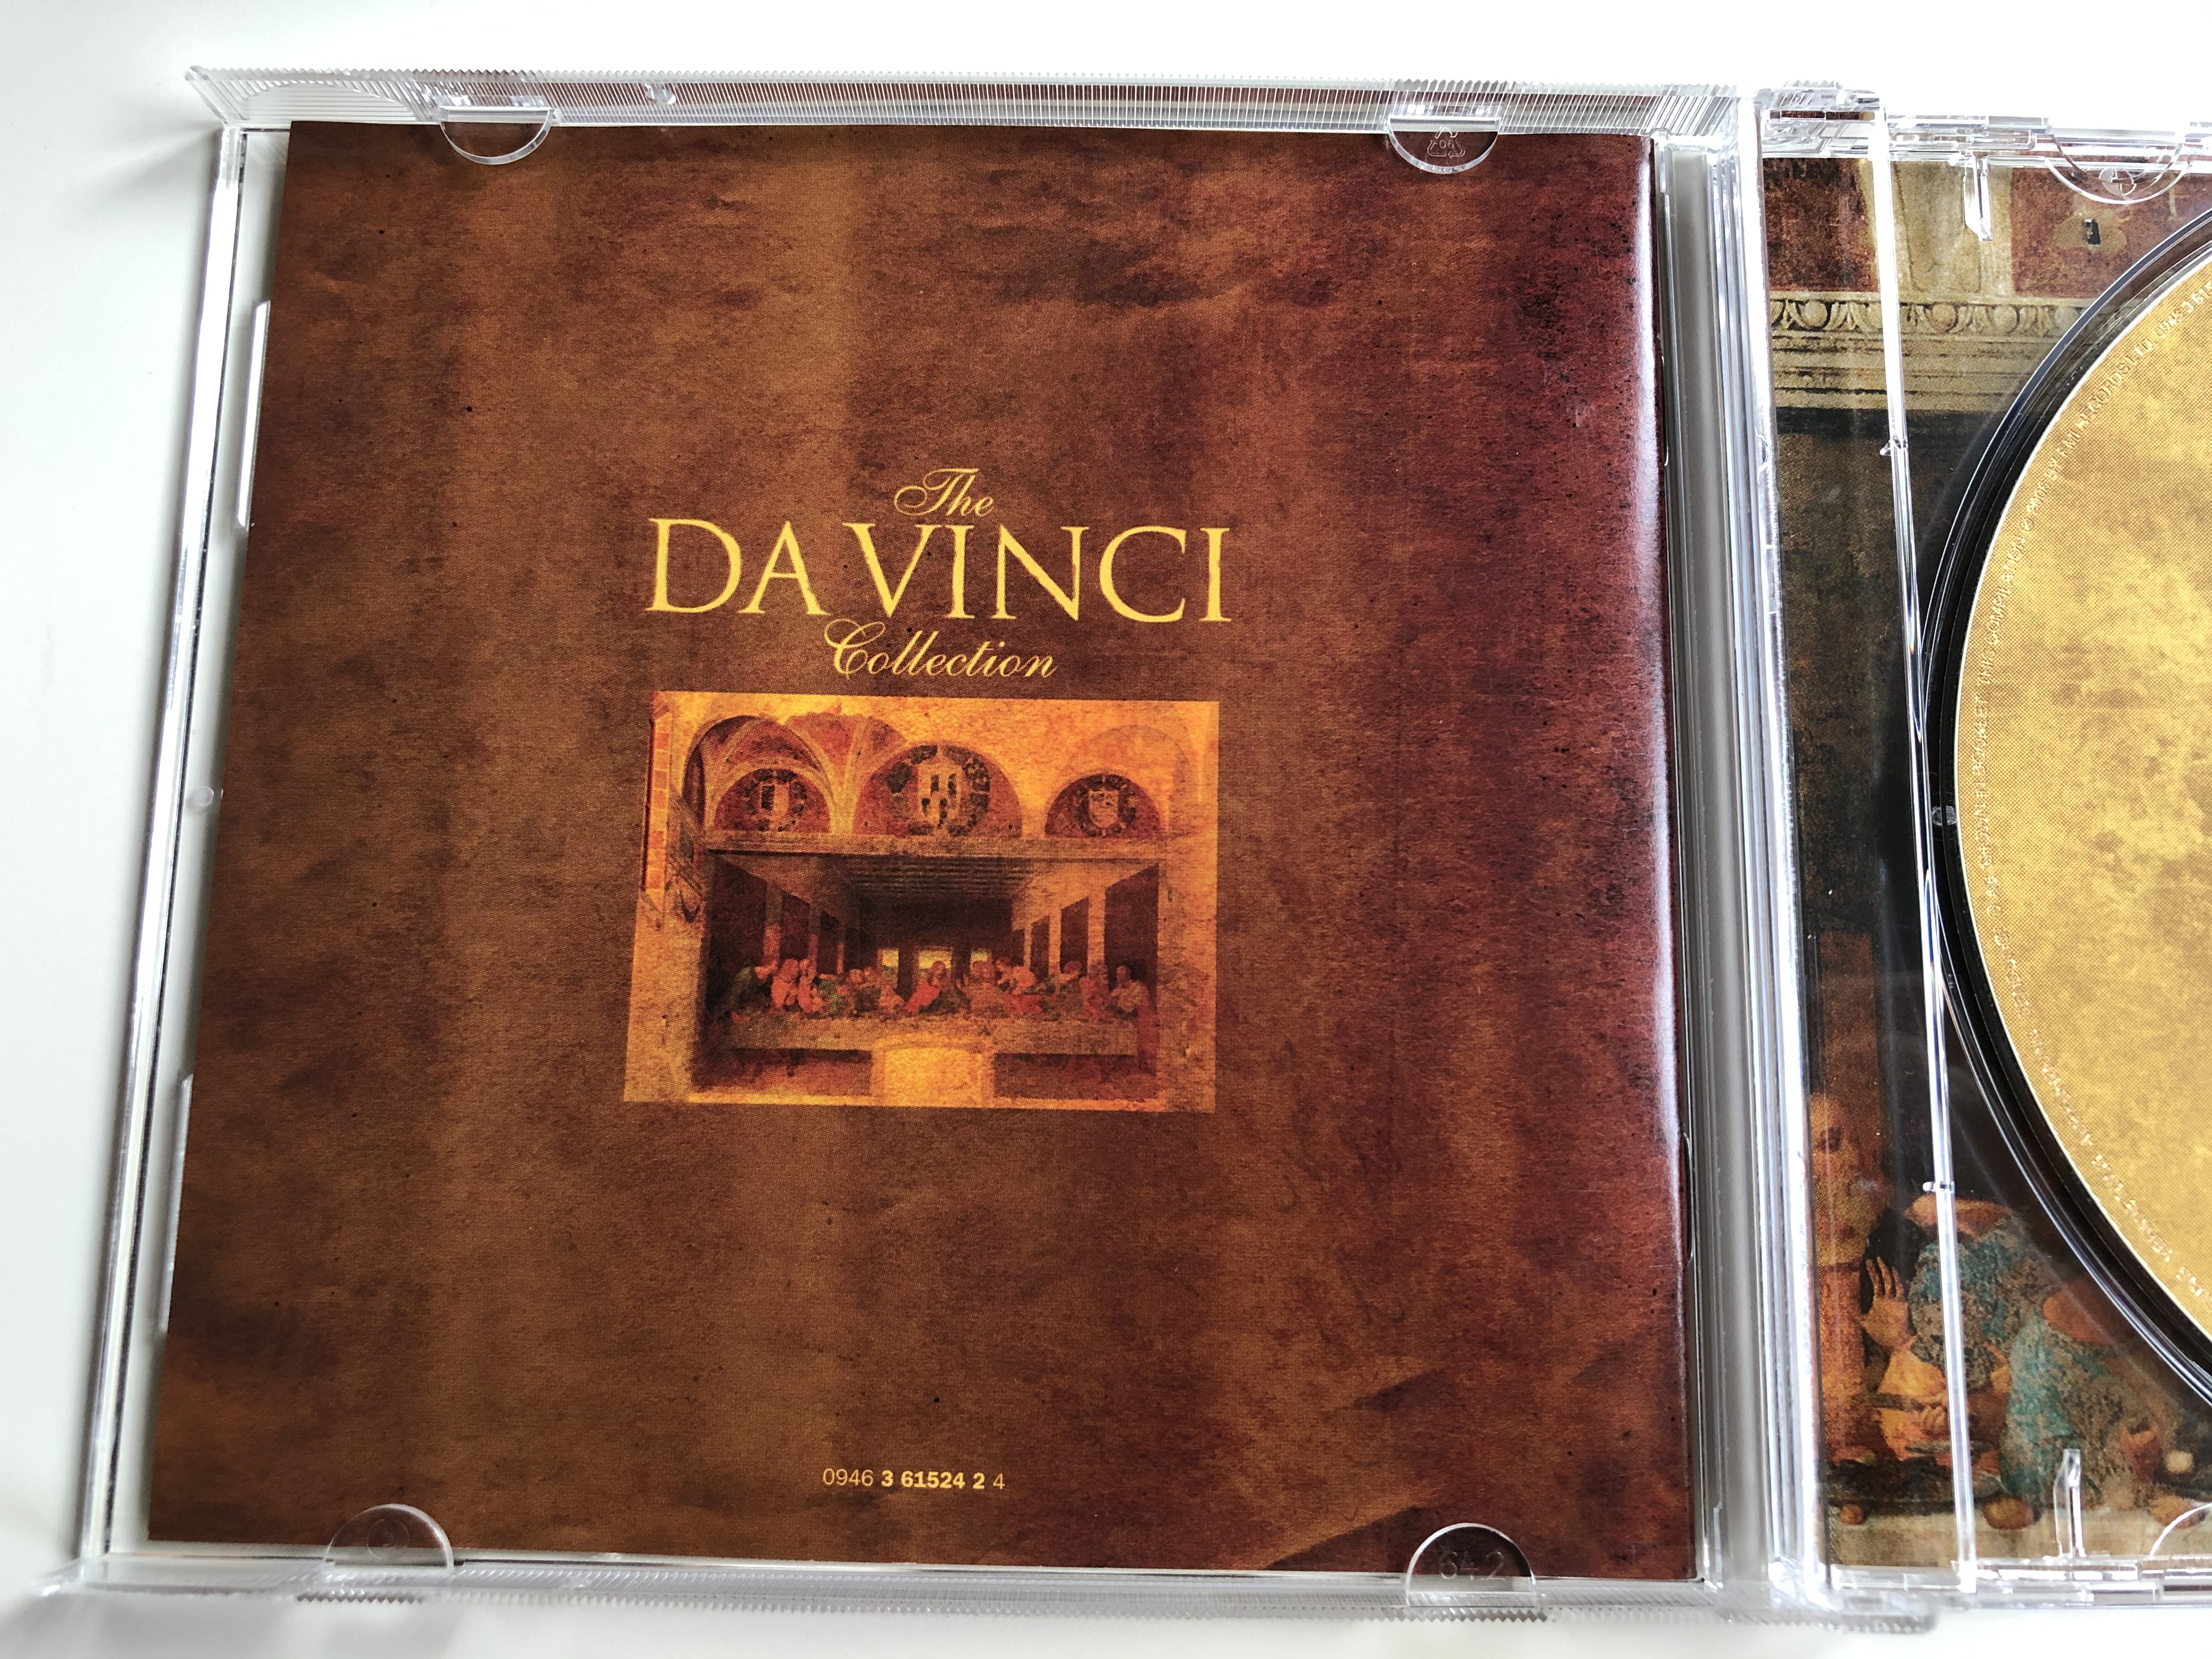 the-da-vinci-collection-emi-classics-audio-cd-2006-stereo-0946-3-61524-2-4-5-.jpg